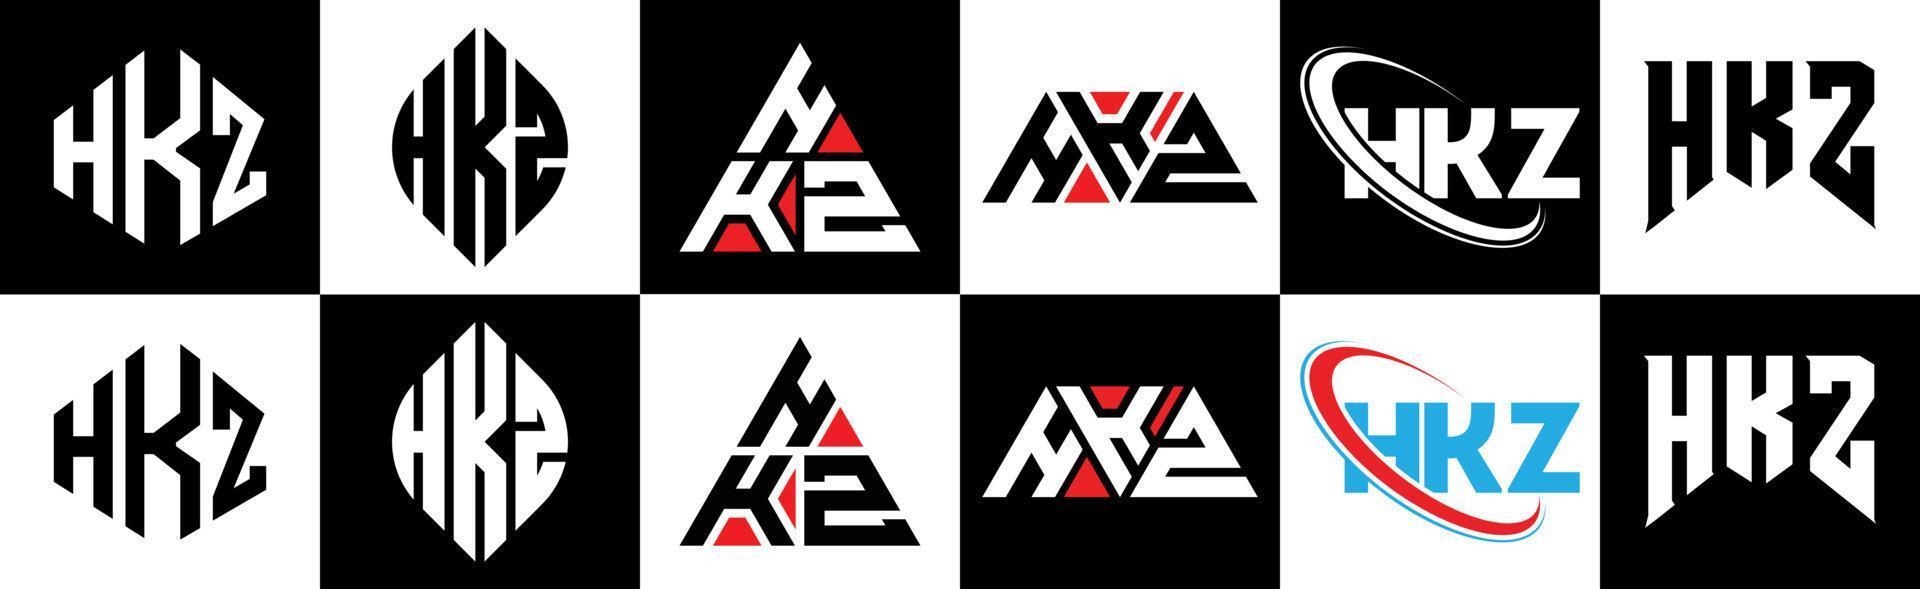 hkz-Buchstaben-Logo-Design in sechs Stilen. hkz polygon, kreis, dreieck, sechseck, flacher und einfacher stil mit schwarz-weißem buchstabenlogo in einer zeichenfläche. hkz minimalistisches und klassisches Logo vektor